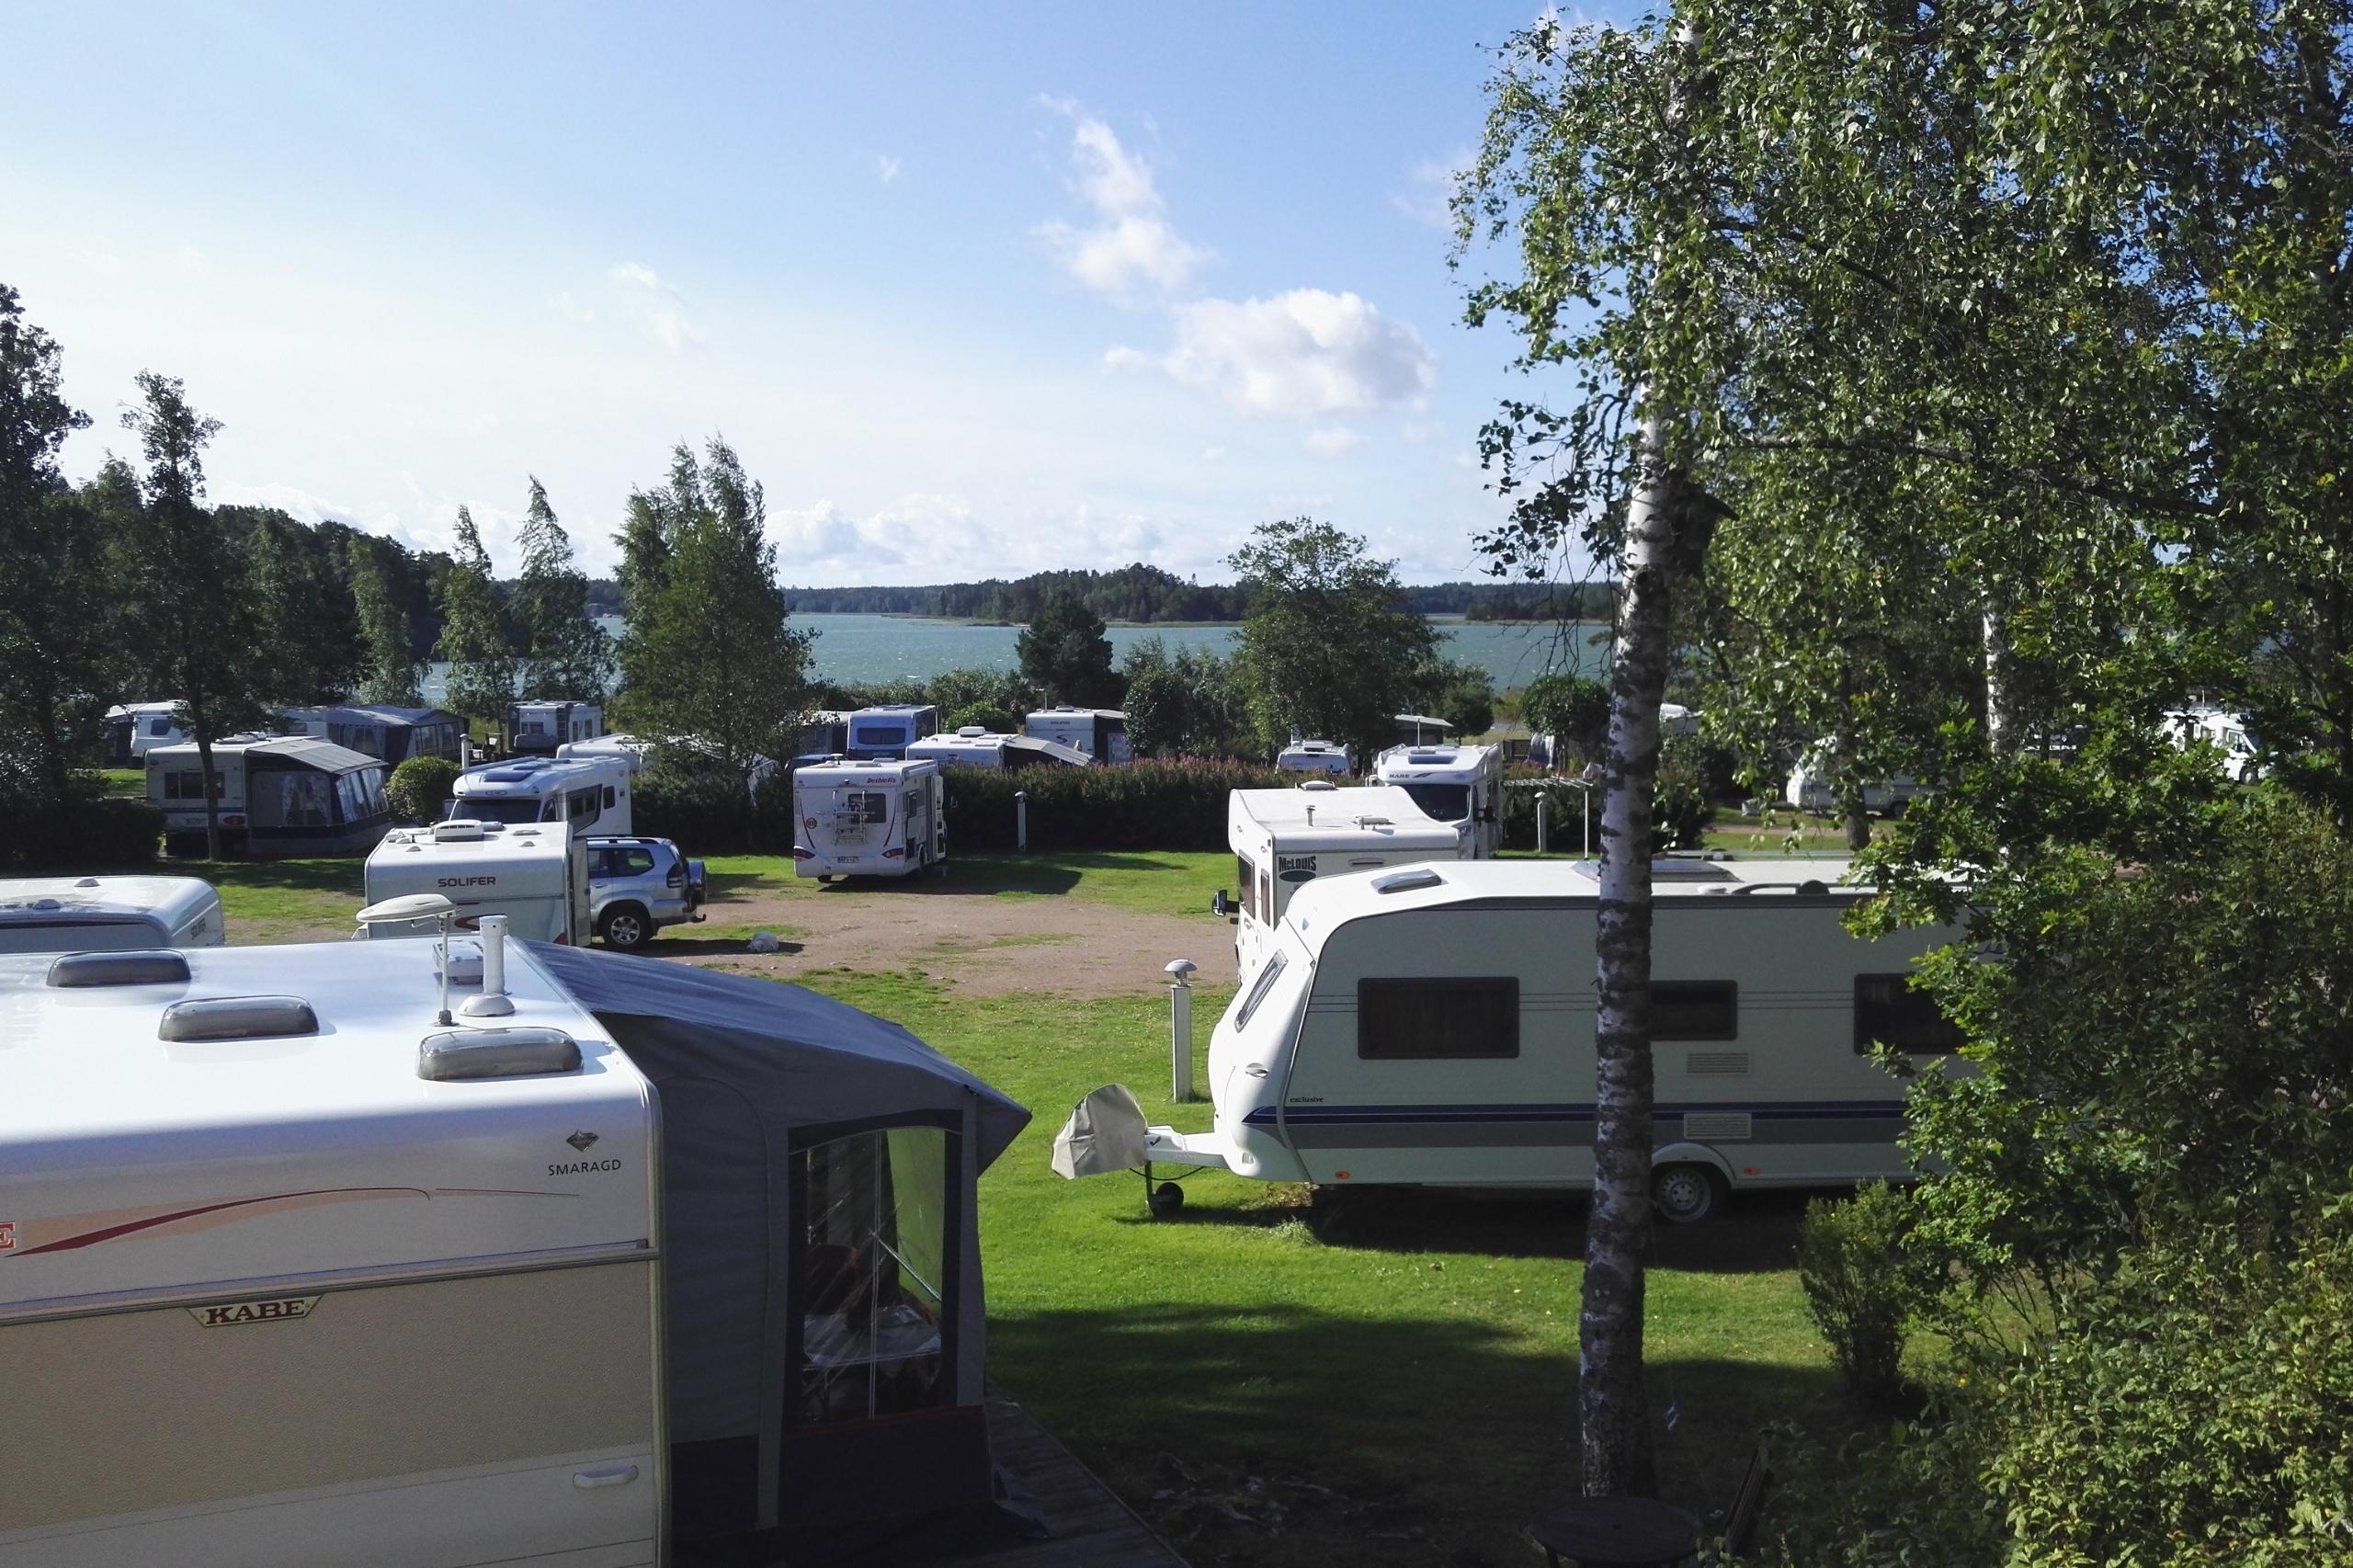  Besonders beliebt bei den Finnen und Touristen ist der Camping Mussalo am finnischen Schärenmeer.